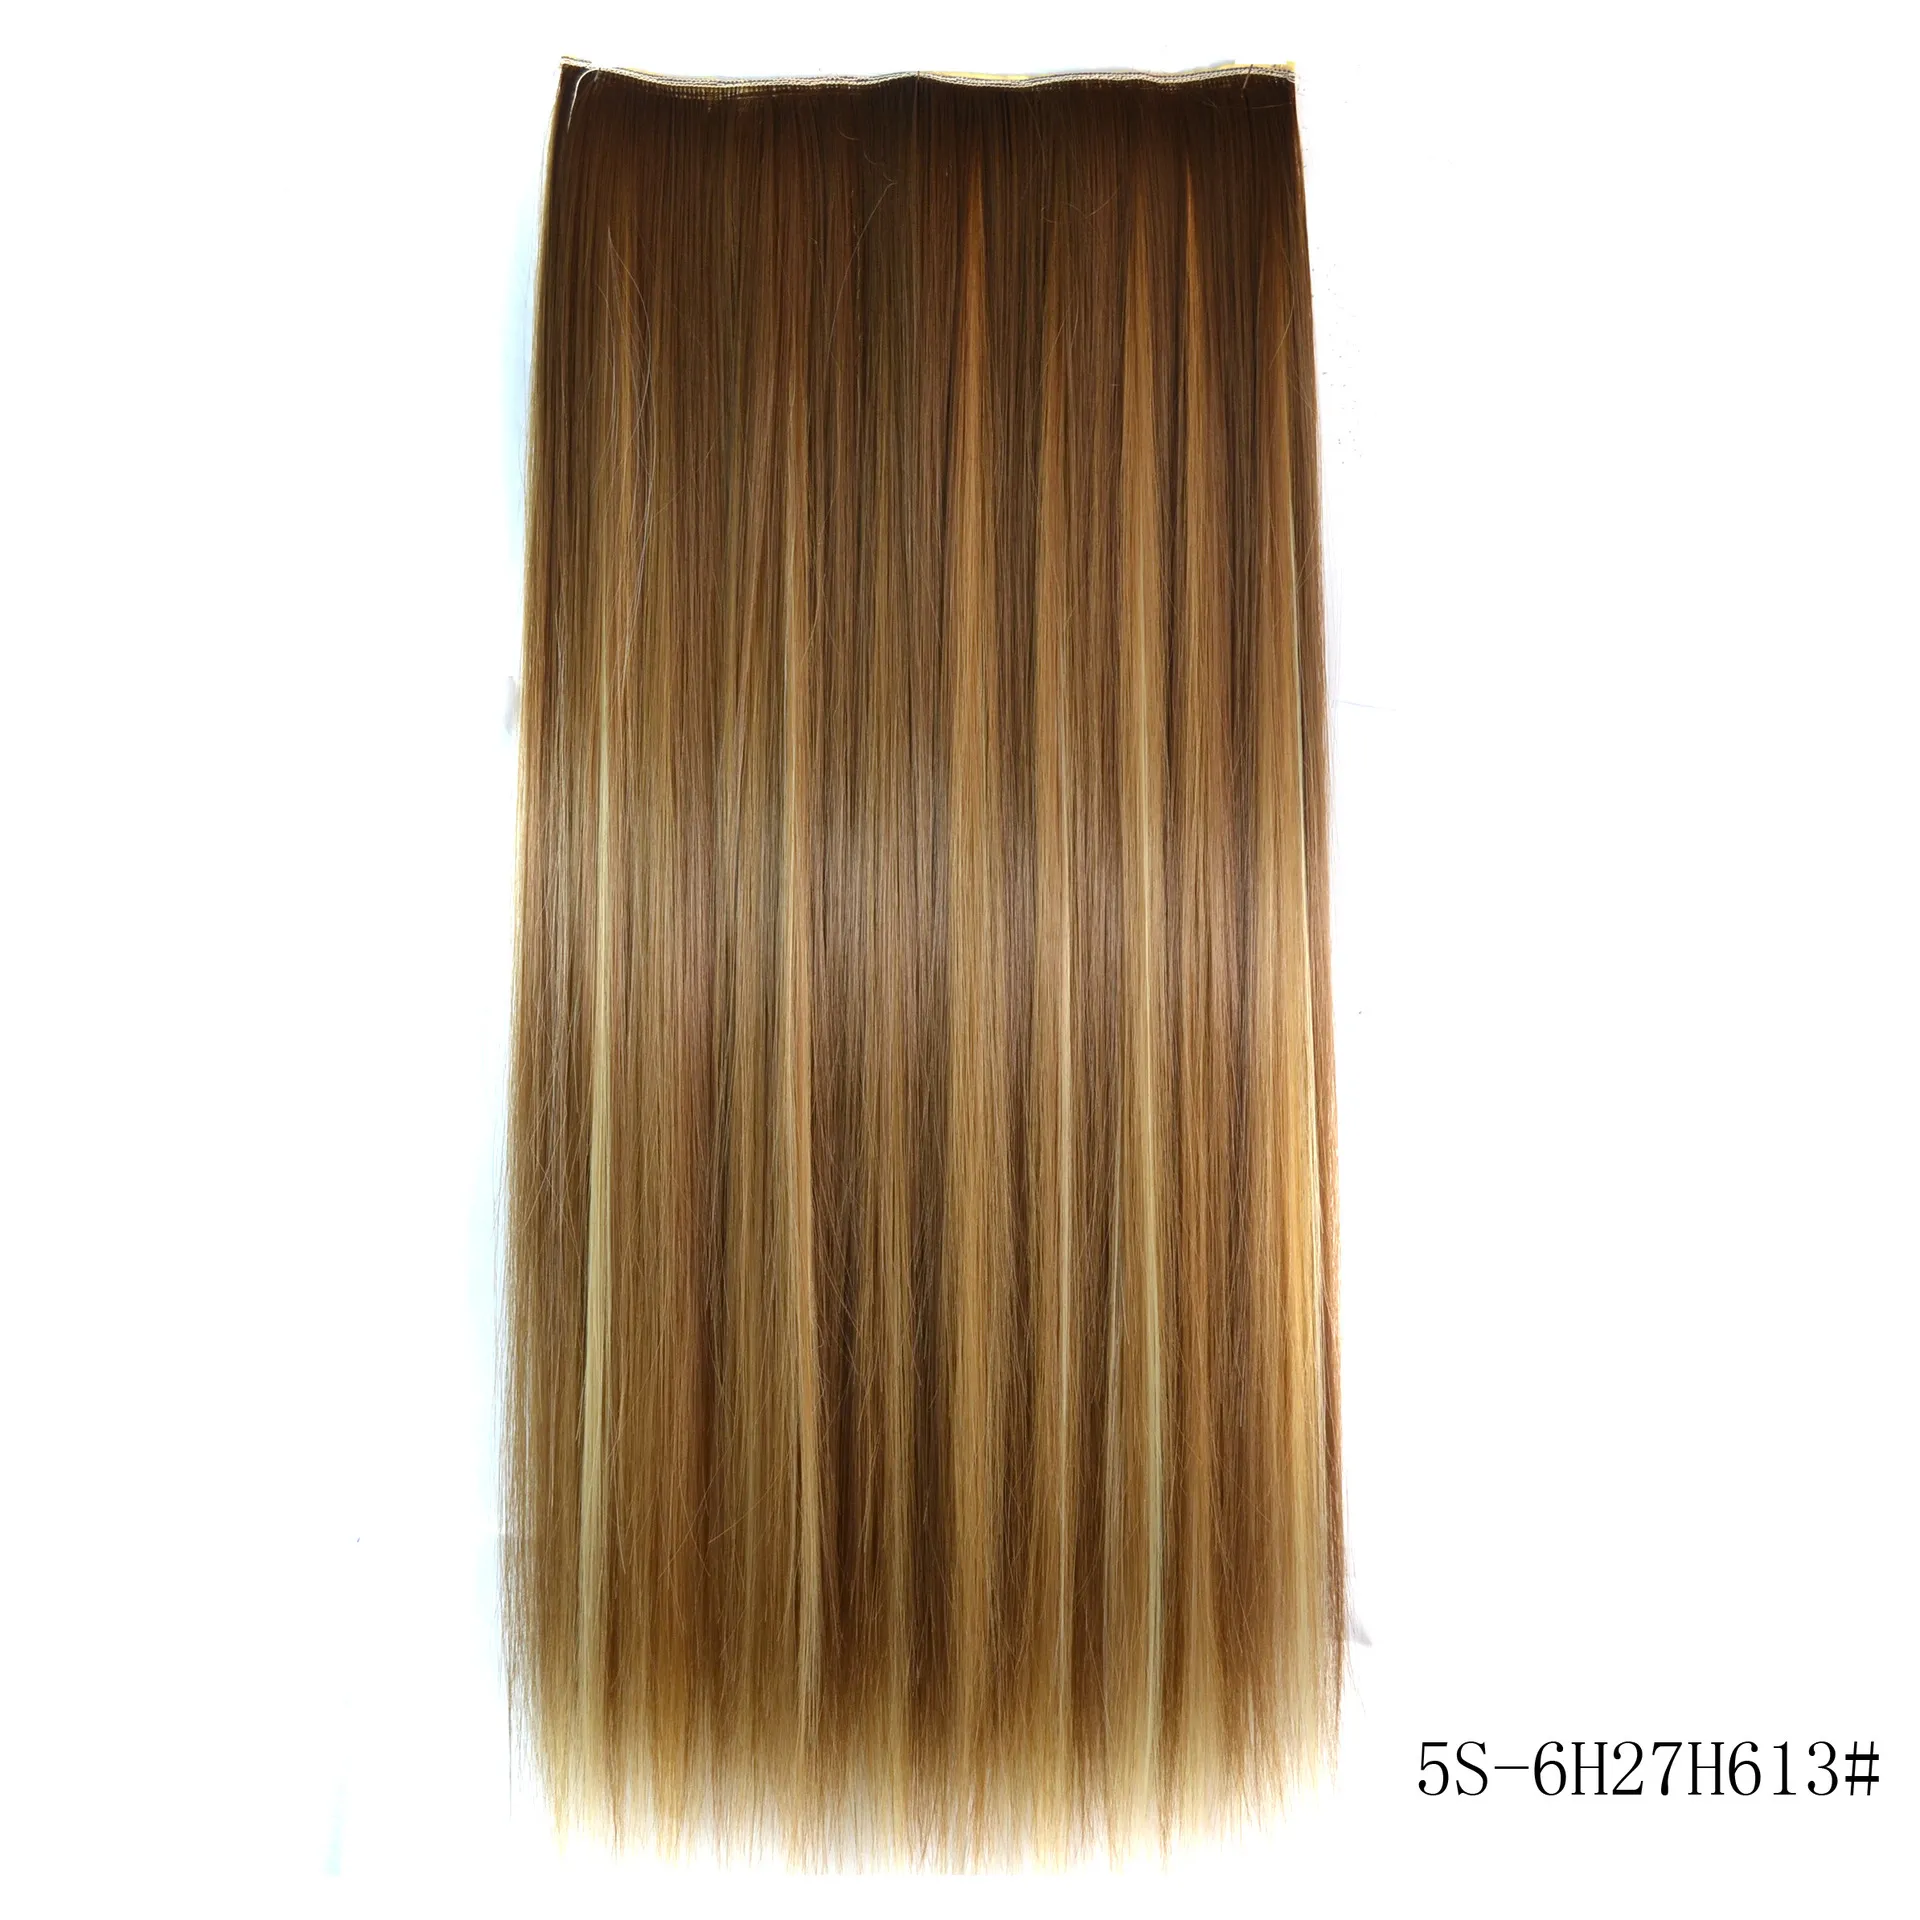 Extensions de cheveux synthétiques lisses et lisses, 24 pouces, cinq clips multicolores, résistants à la chaleur, 9617336